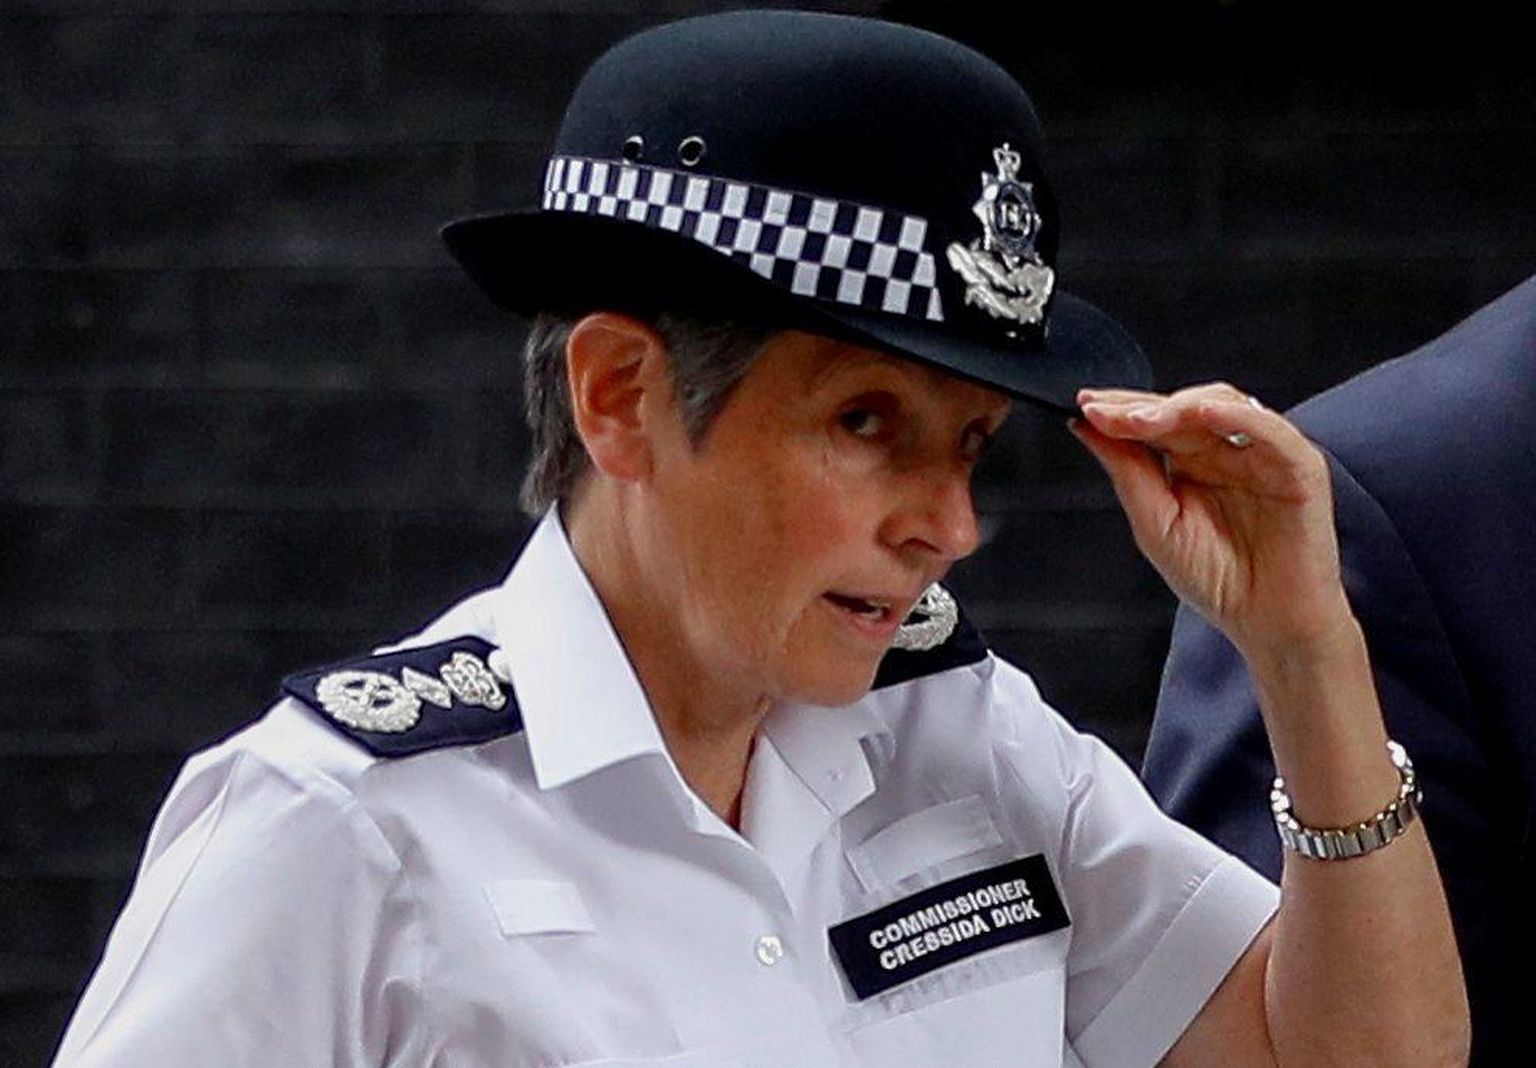 Mälestusteenistuse jõulise mahasurumise järel on nõutud enesekindla juhina tuntud Londoni politseiülema Cressida Dicki tagasiastumist.